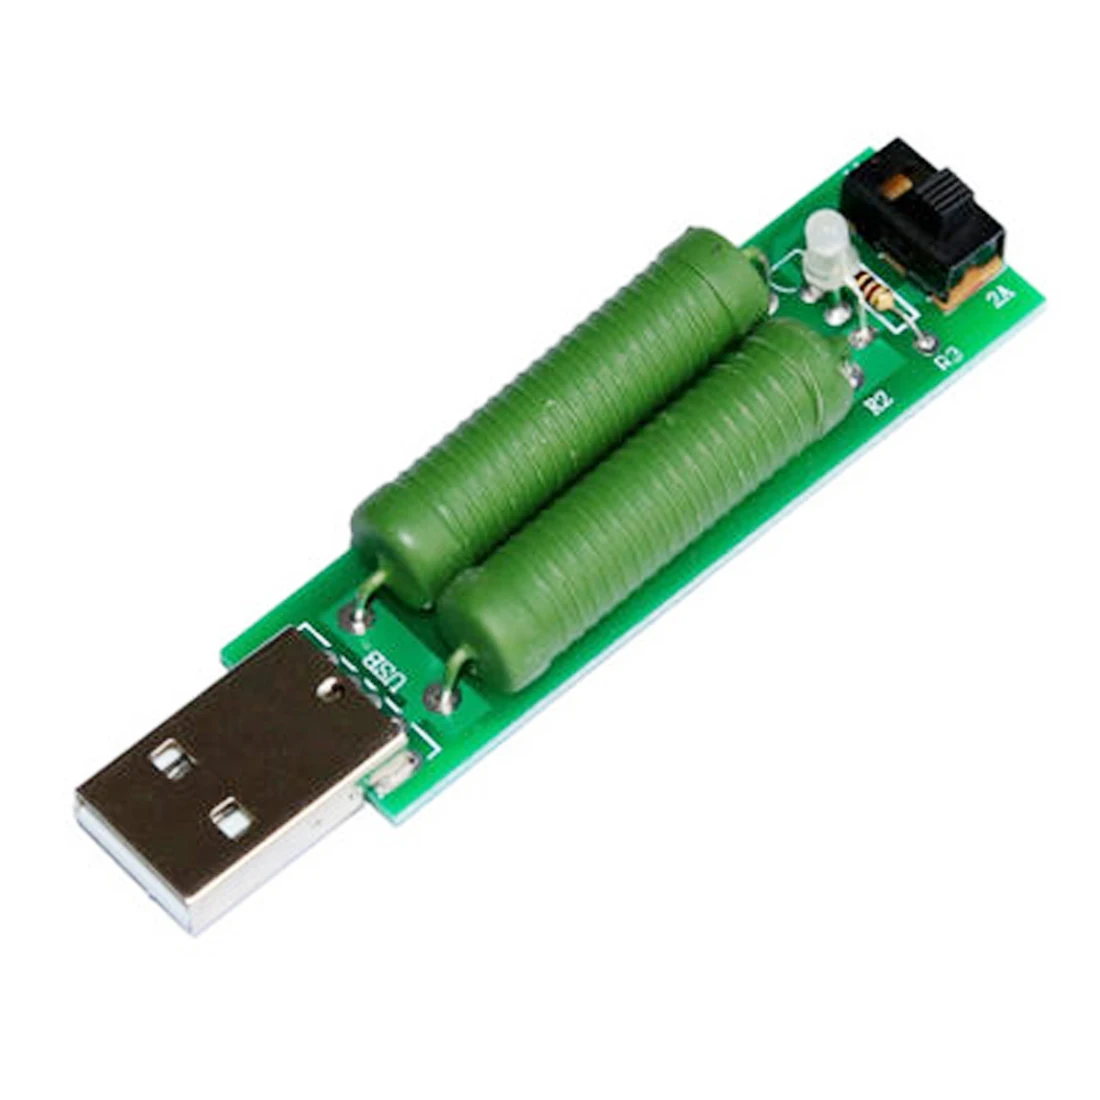 USB порт мини разряд нагрузочный резистор цифровой измеритель напряжения тока тестер 2A/1A с переключателем 1A зеленый светодиод/2A красный светодиод